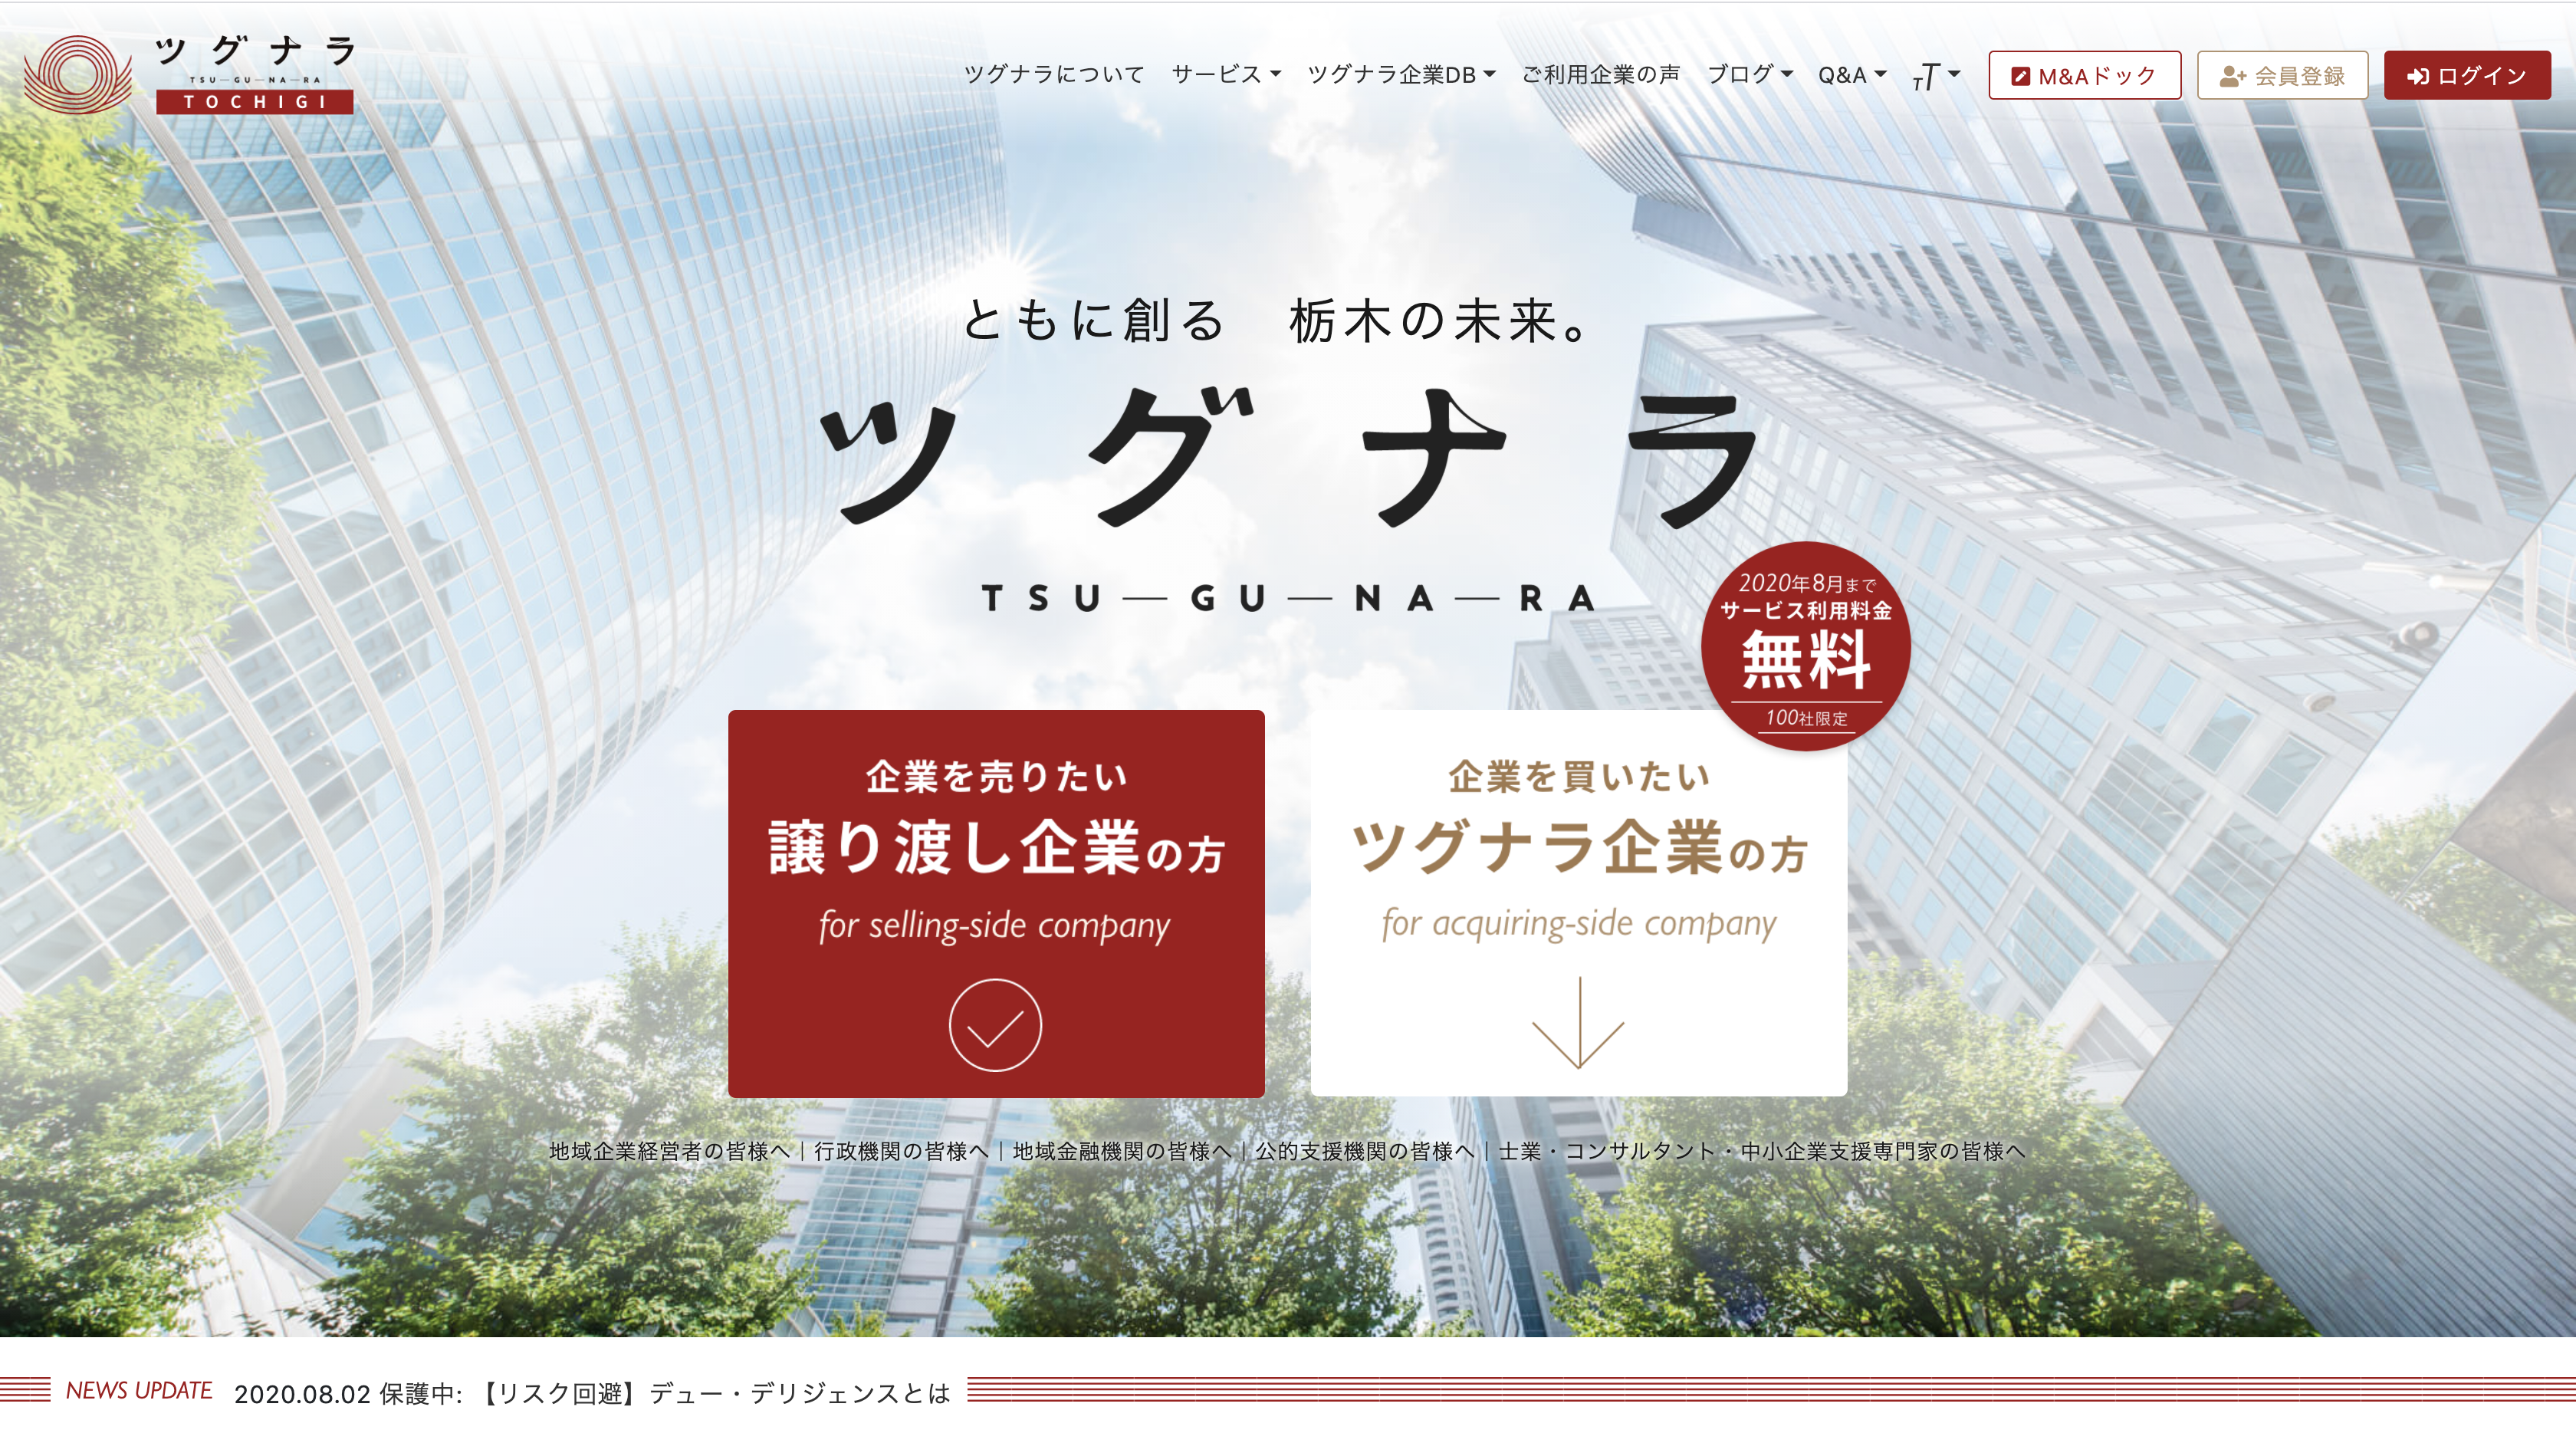 栃木県内企業に特化したM&Aマッチングプラットフォーム【ツグナラ】